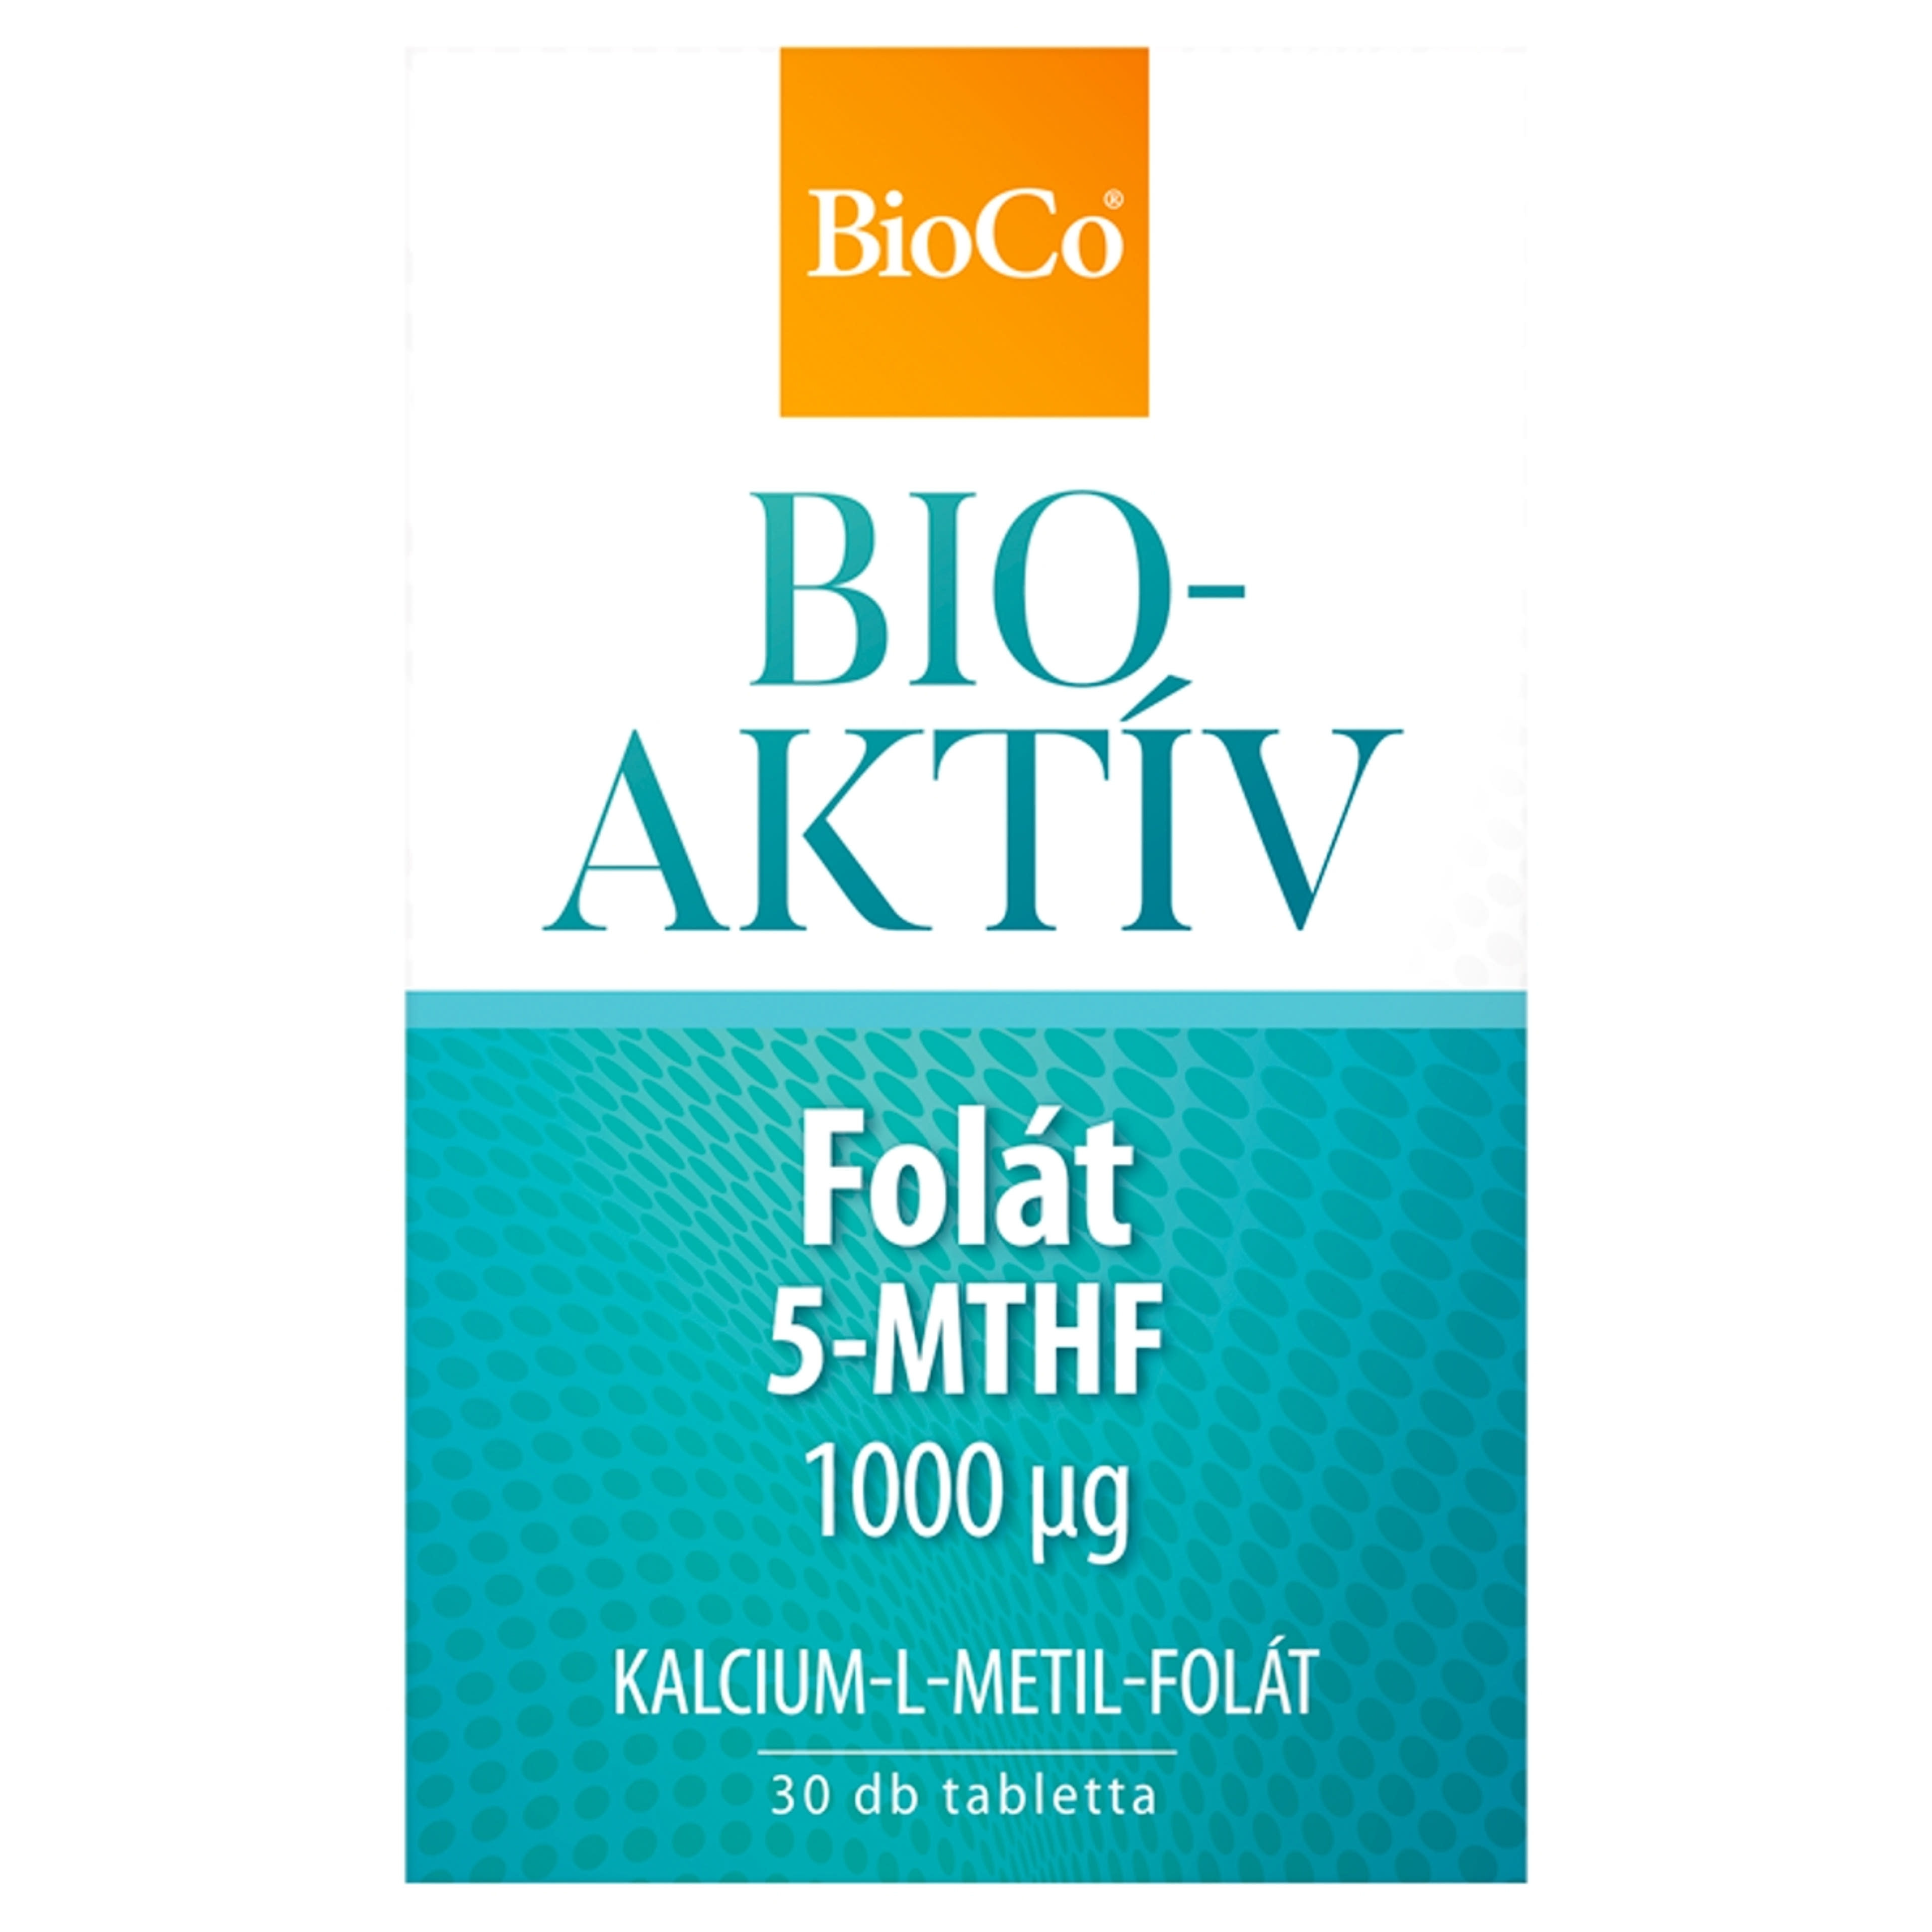 BioCo Bioaktív Folát 1000 µg étrend-kiegészítő tabletta - 30 db